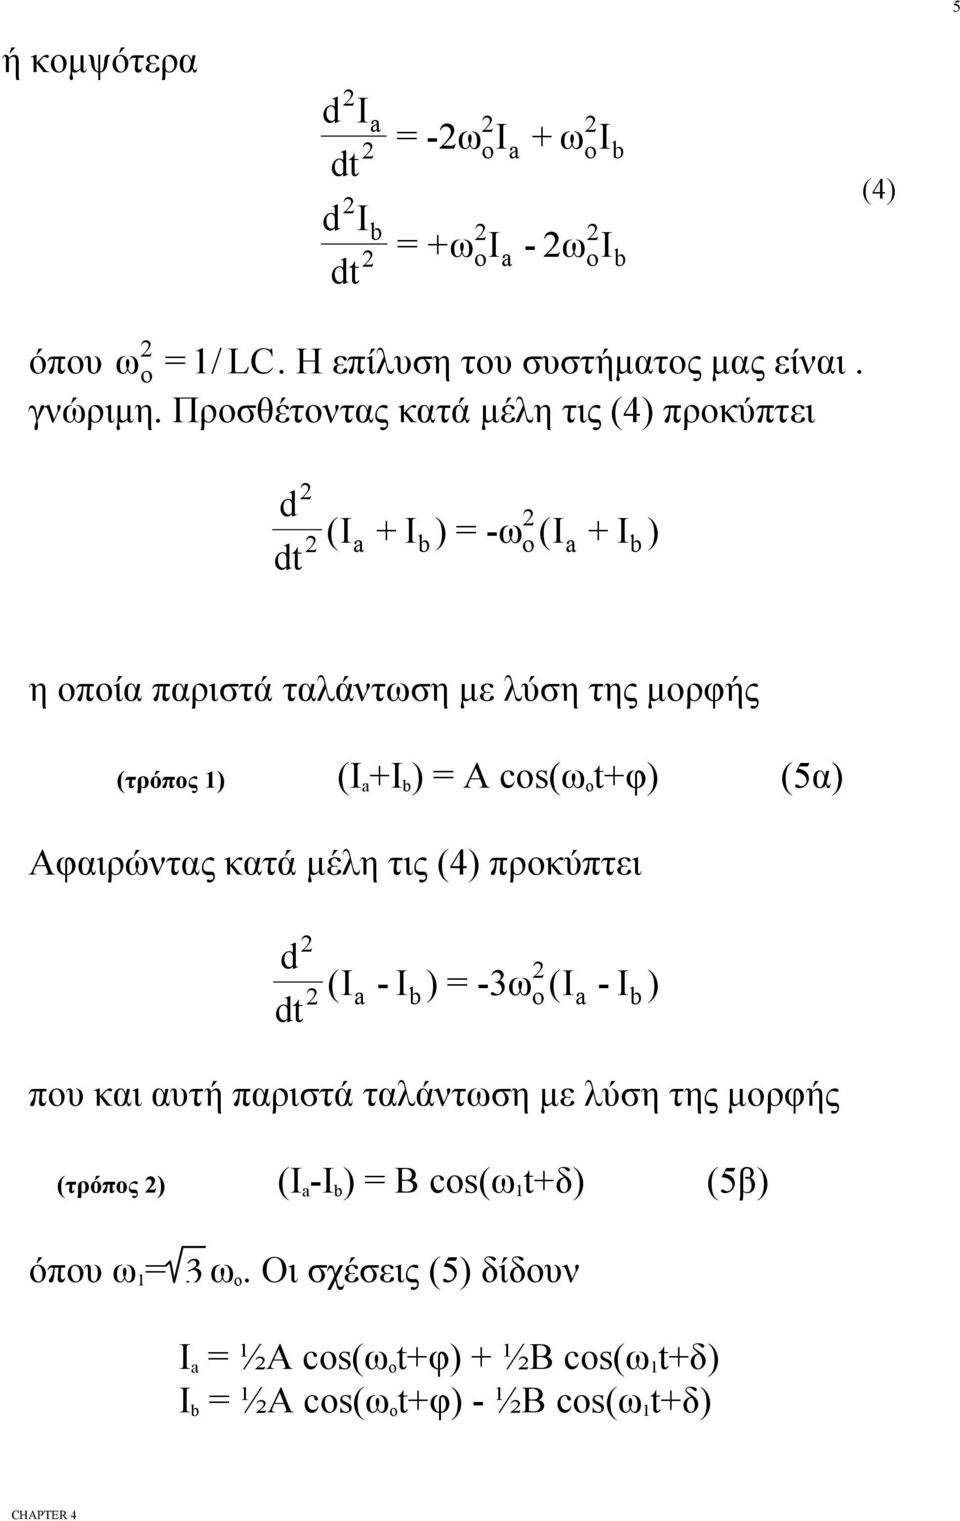 cos(ω o t+φ (5α Aφαιρώντας κατά μέλη τις (4 πρκύπτει d (Ι - Ι b = -3ω (Ι - Ι b πυ και αυτή παριστά ταλάντωση με λύση της